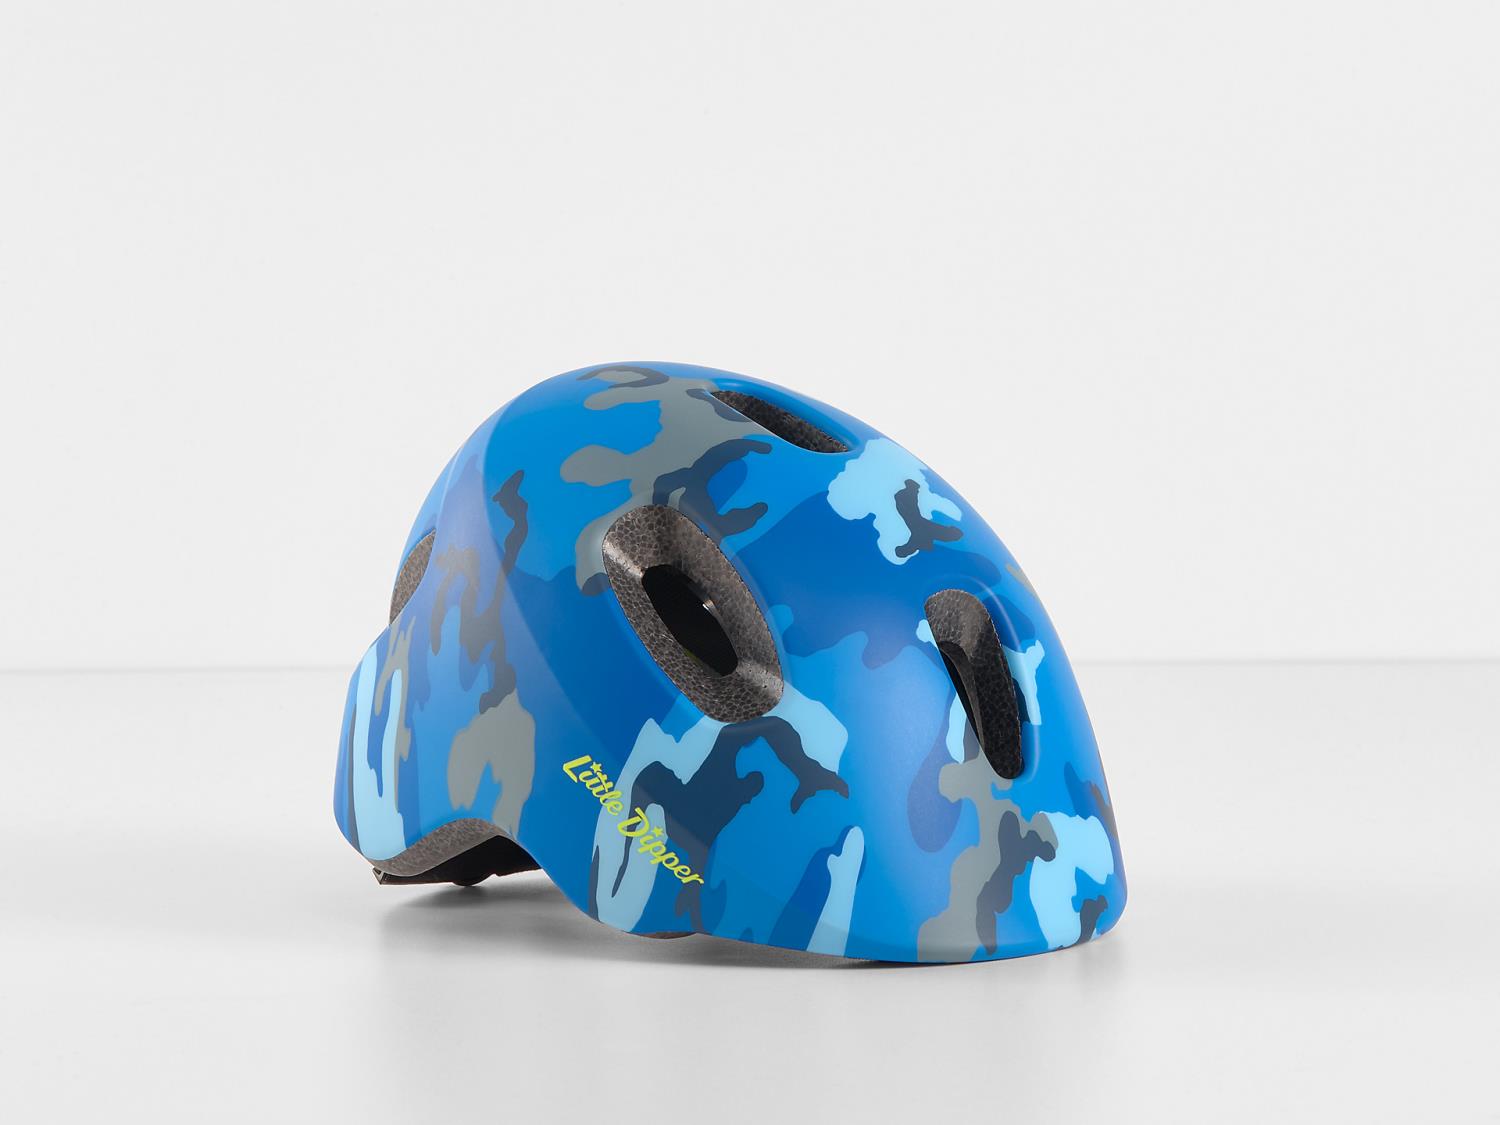 Bontrager Little Dipper Kids' Bike Helmet